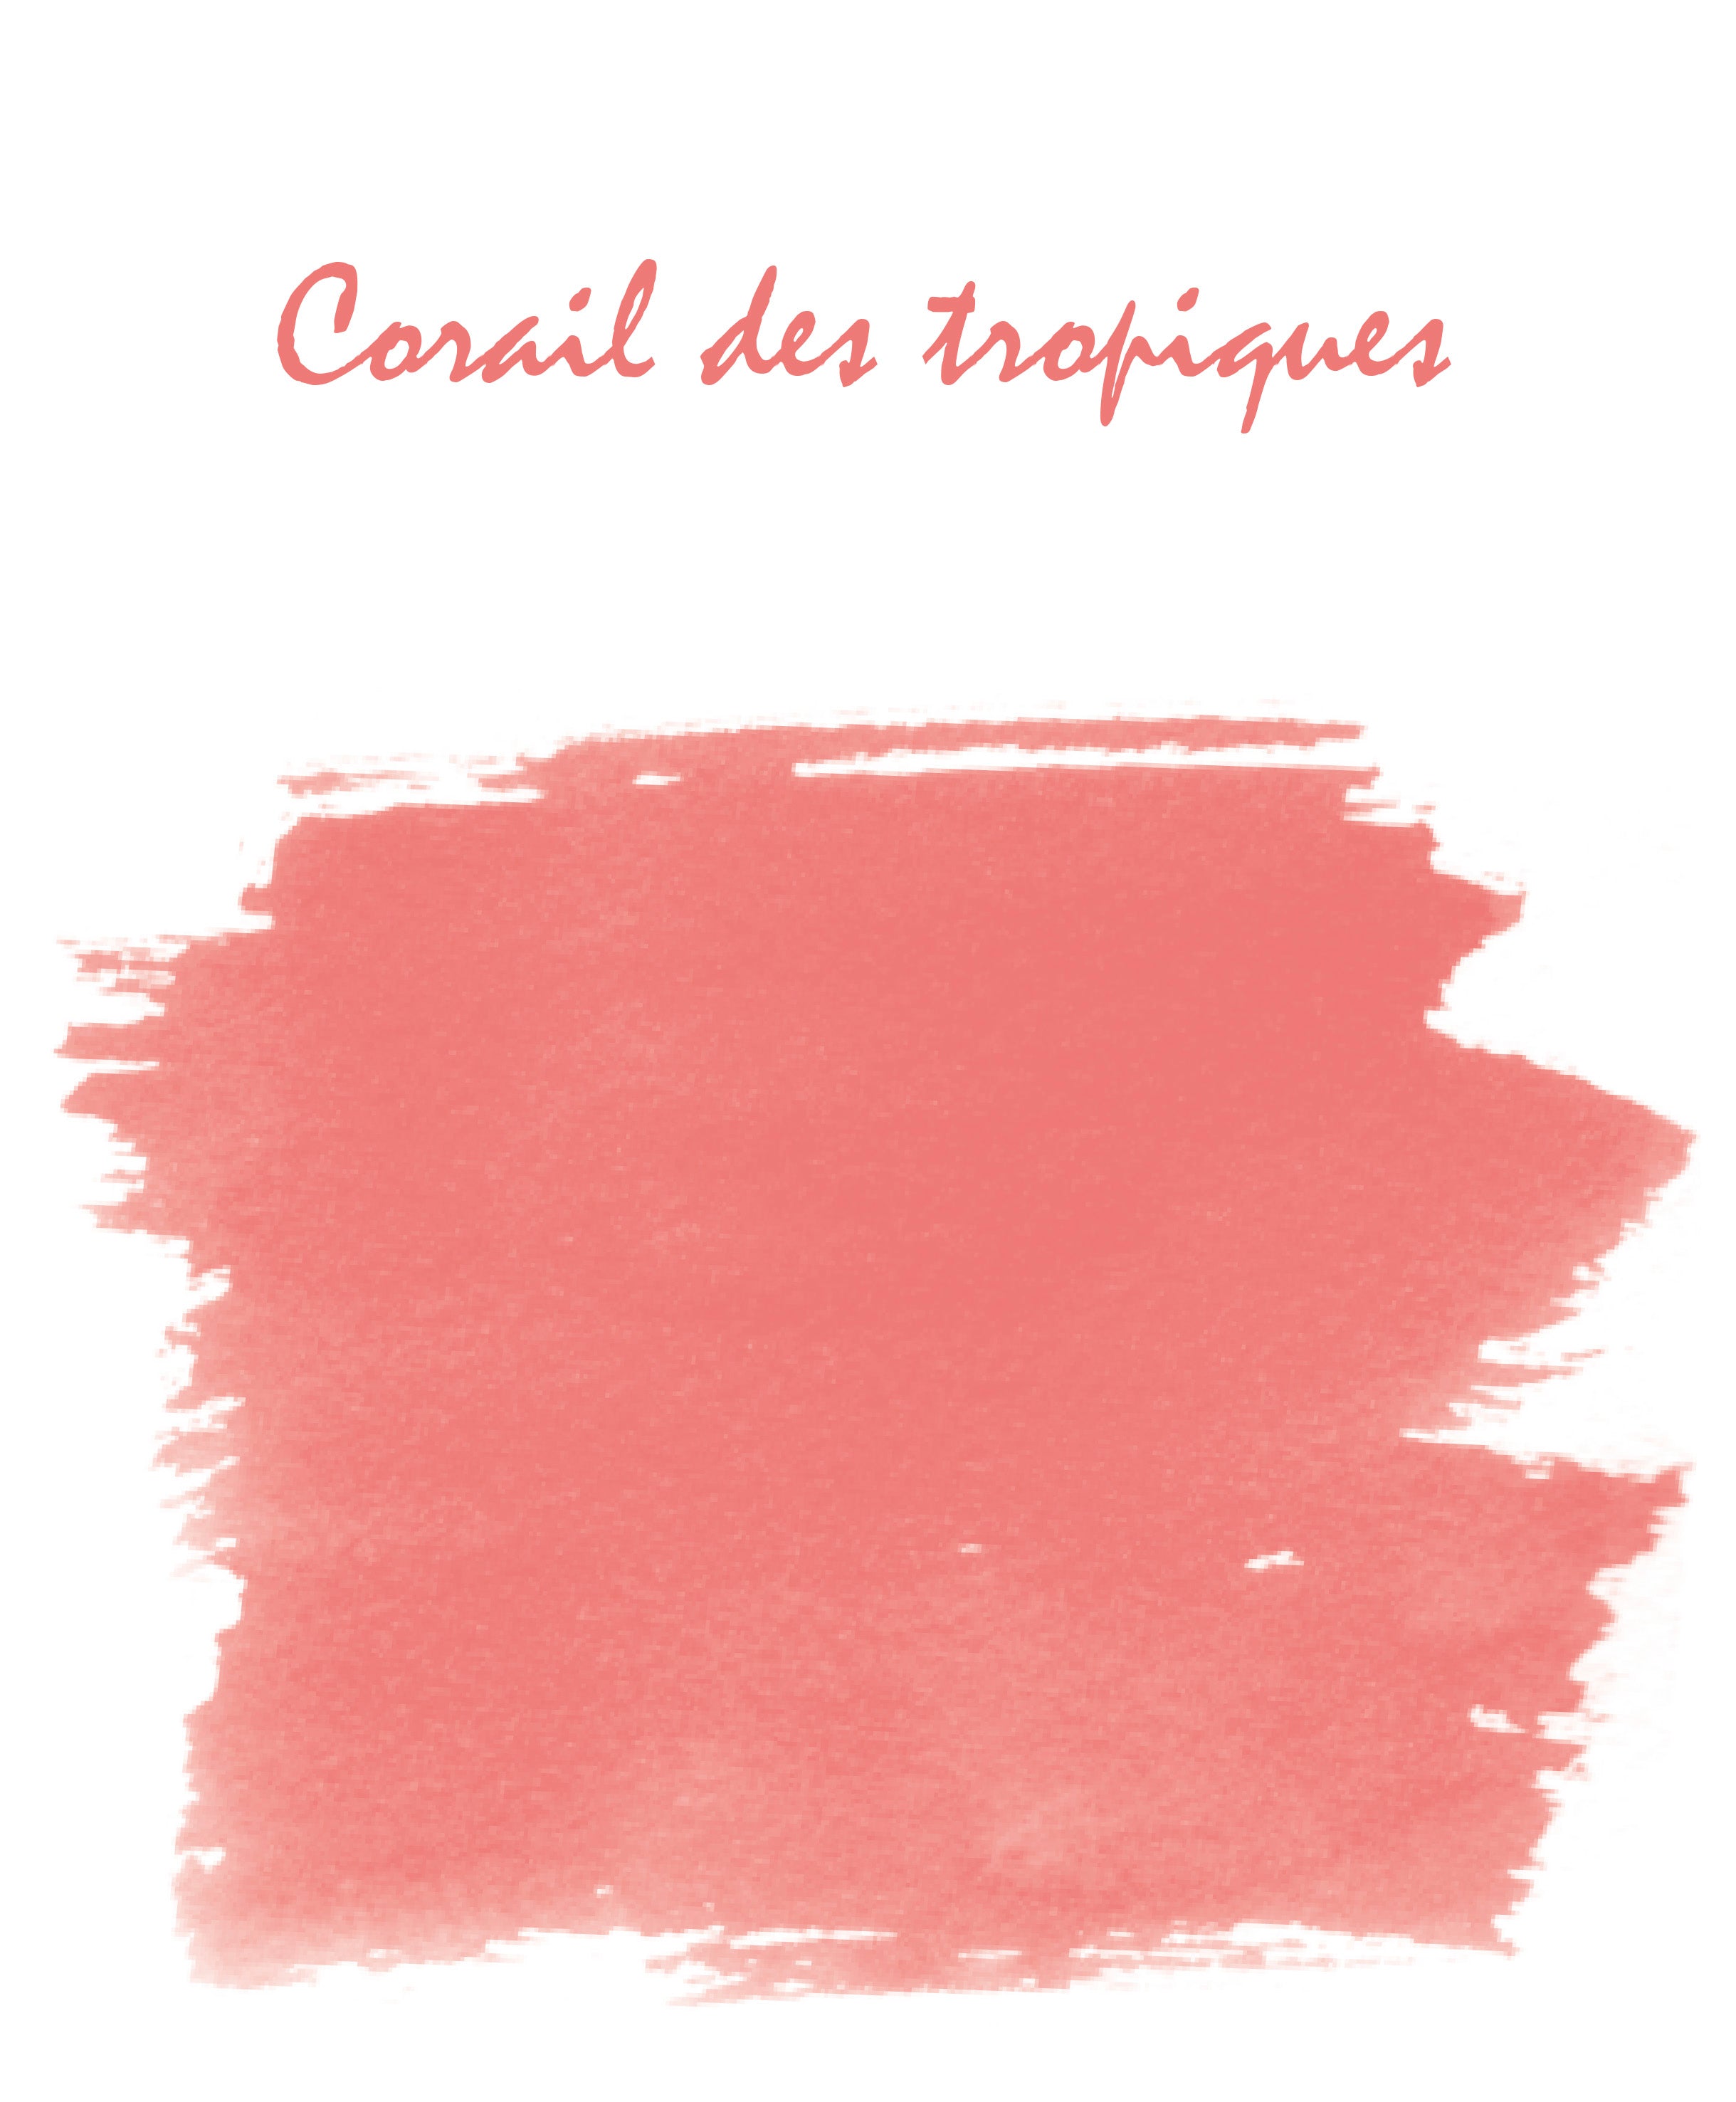 Swatch von Corail des Tropiques by Herbin.